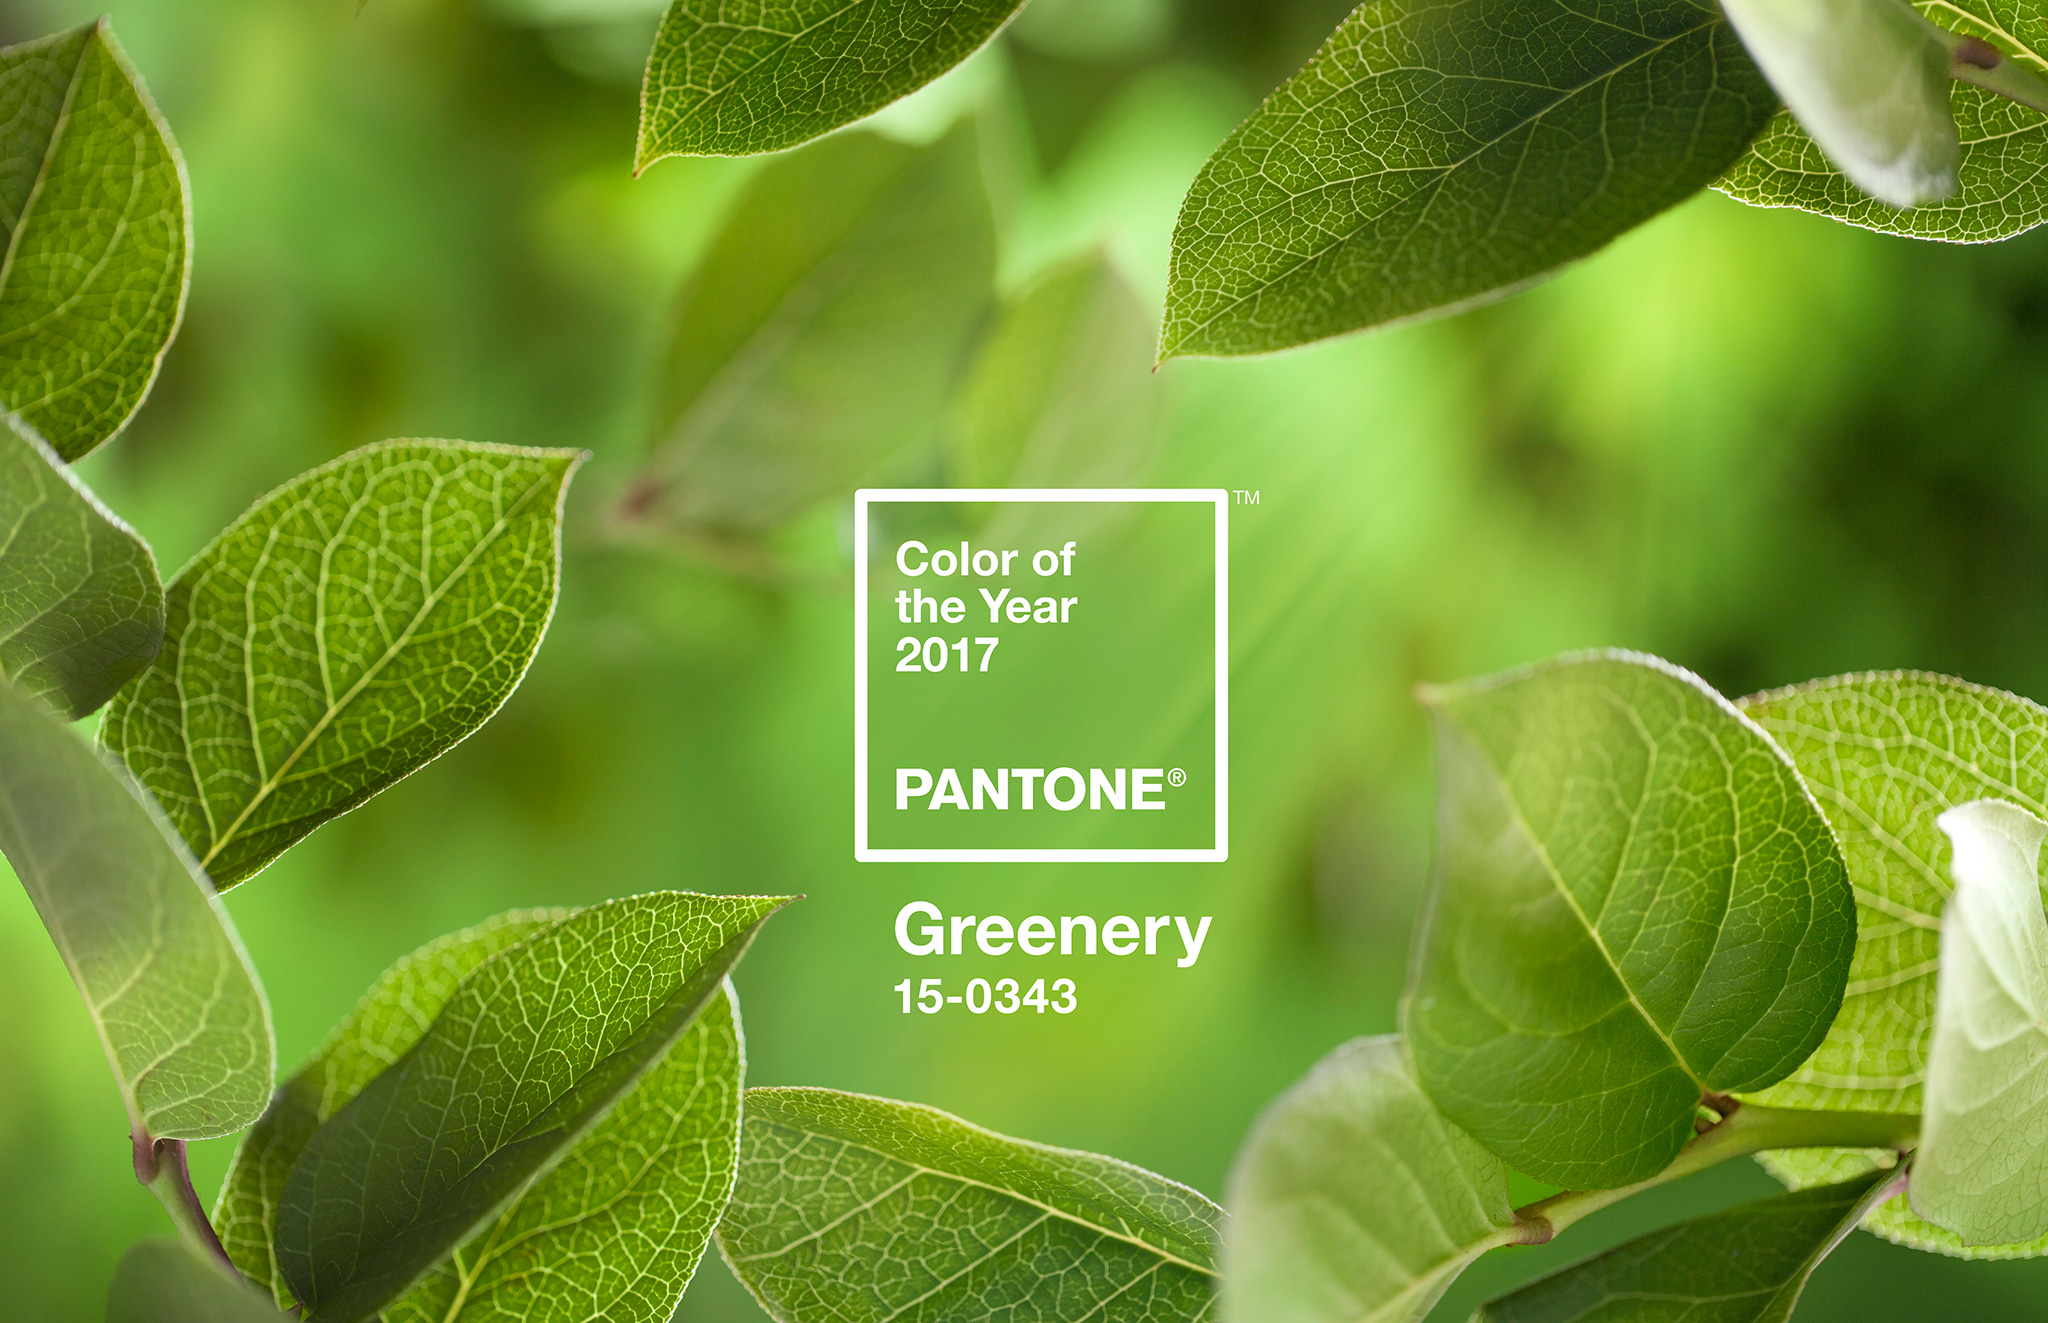 Pantone Color of the Year 2017: PANTONE 15-0343 Greenery